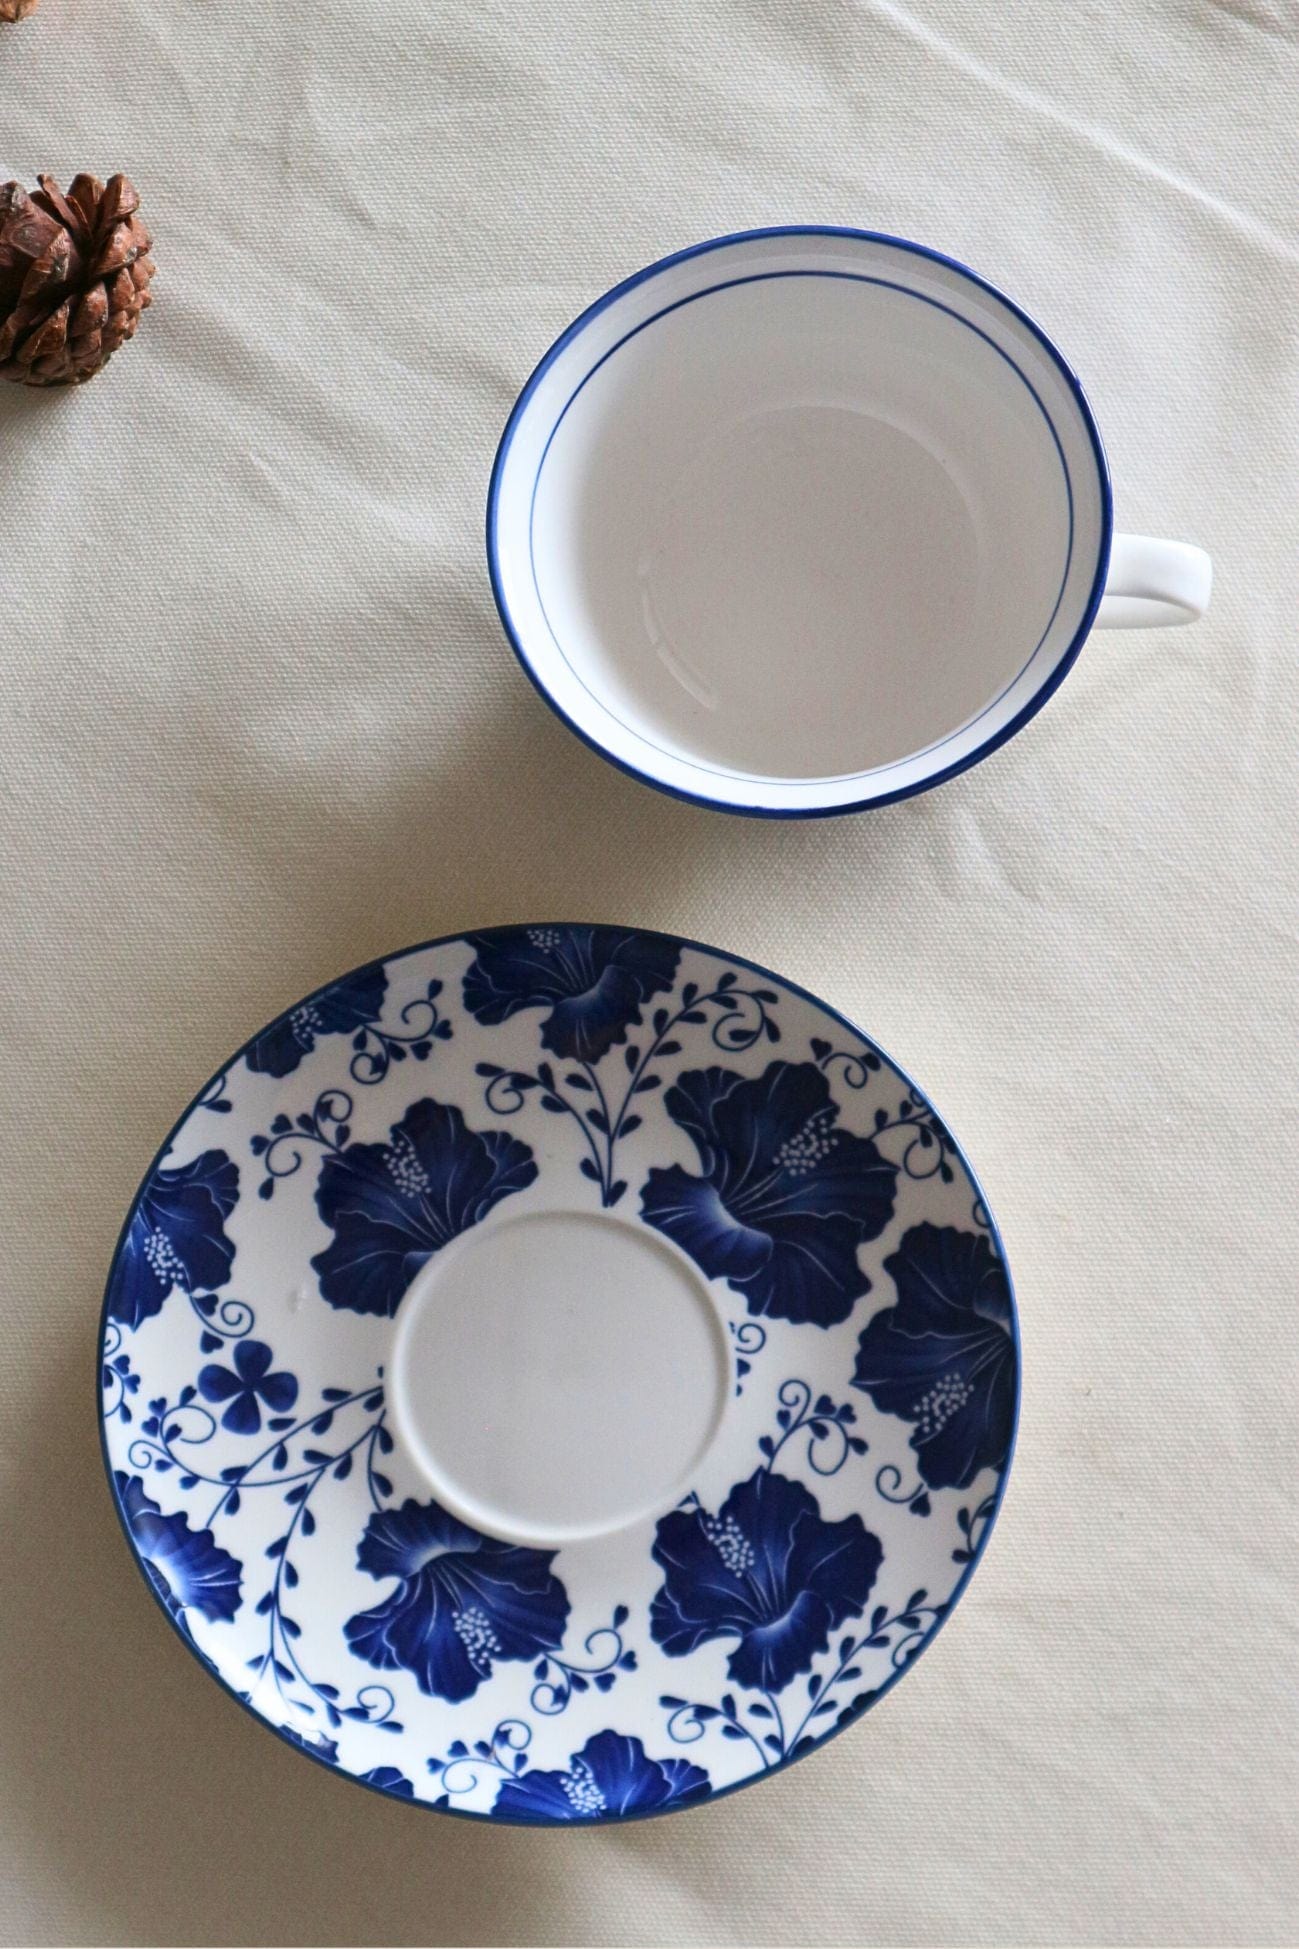 Luxe Lodge Blue Spring Blue Spring - Tazza e piattino in ceramica con fiori blu | Luxe Lodge